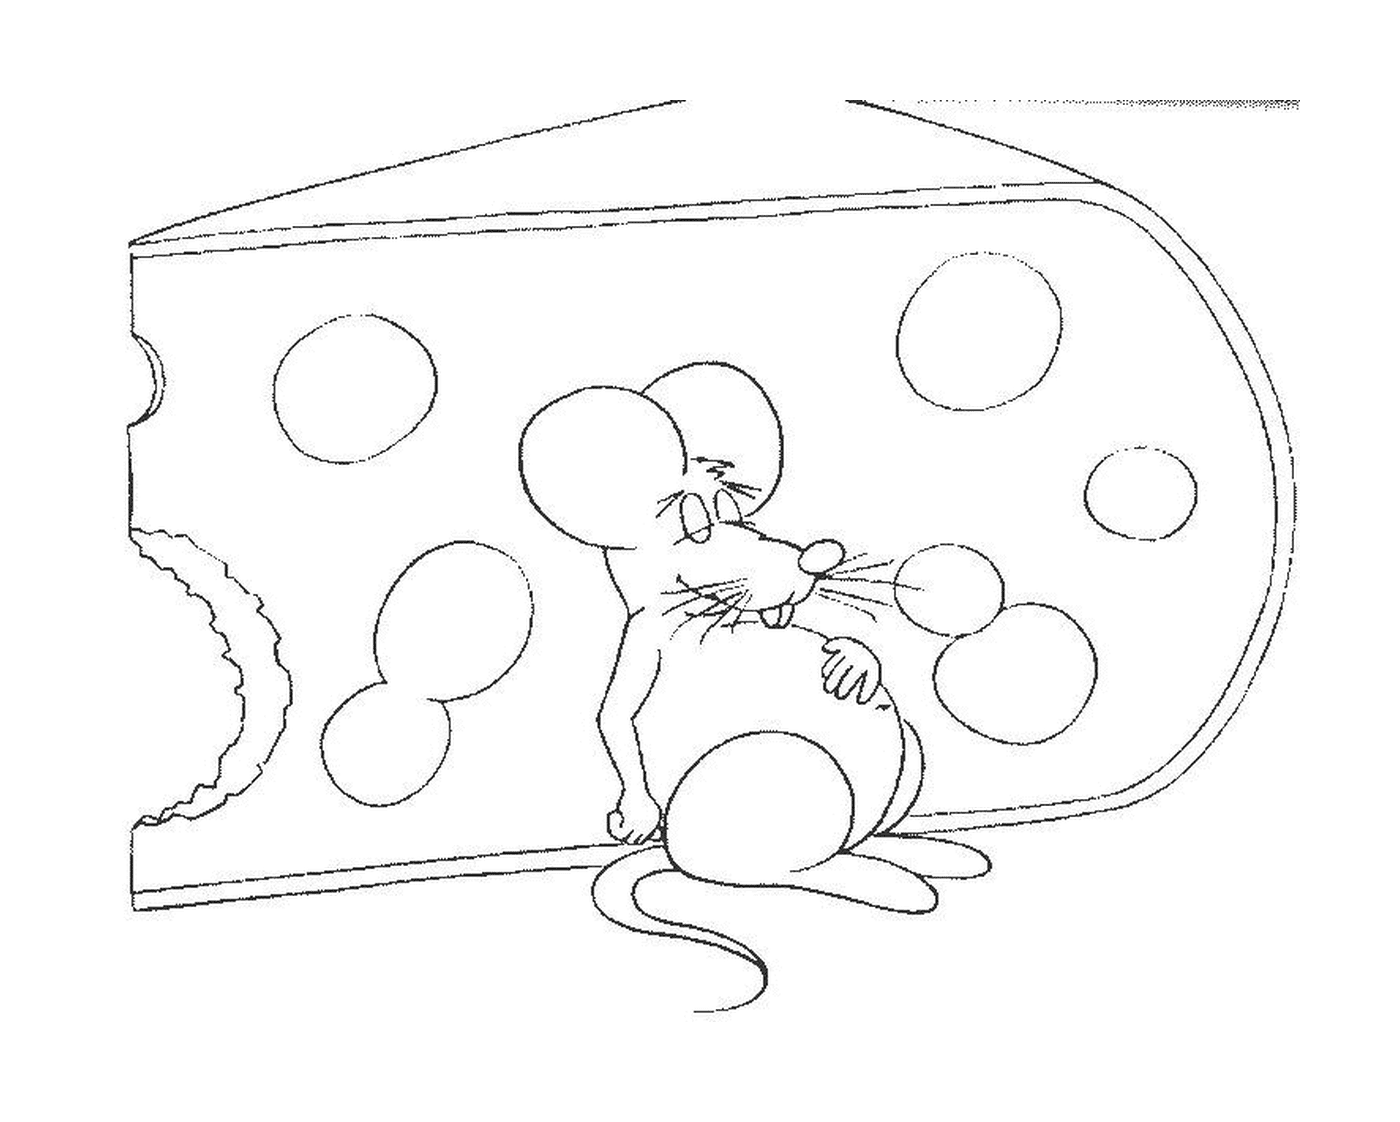   Une souris adossée à un gros morceau de fromage 